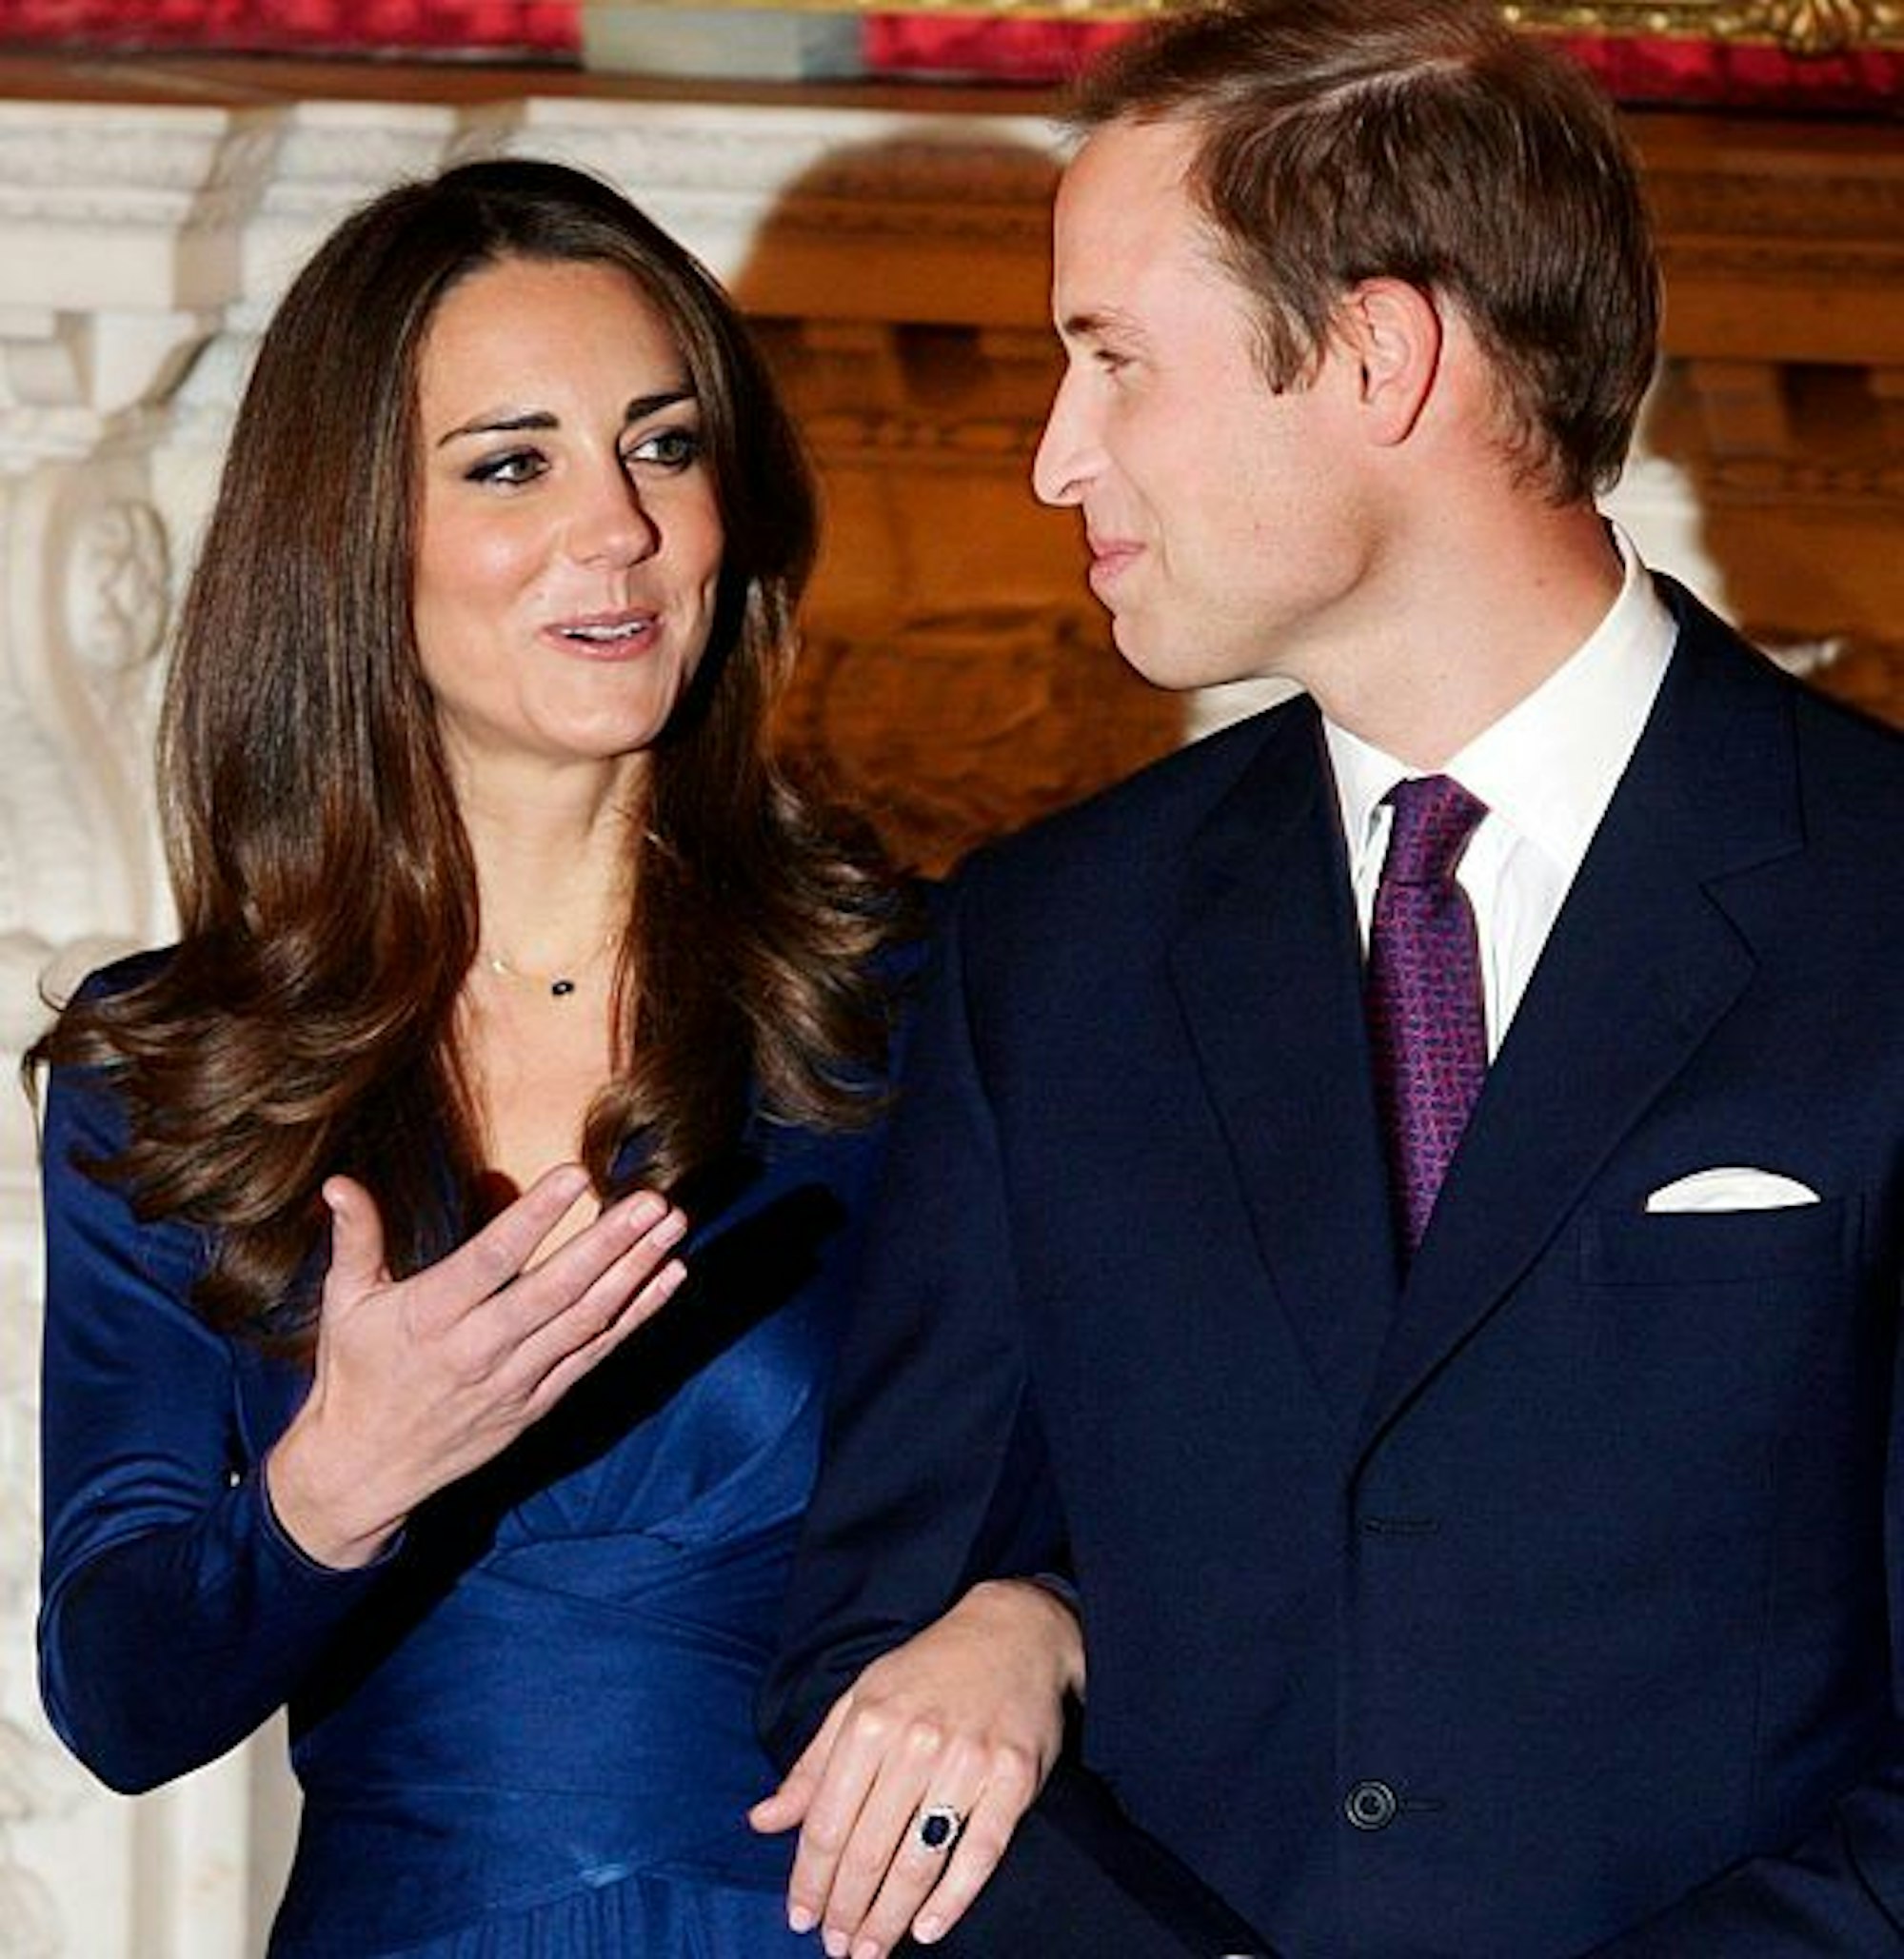 Der britische Prinz William und seine Verlobte Kate Middleton zeigen sich am 16.11.2010 in London den Journalisten.